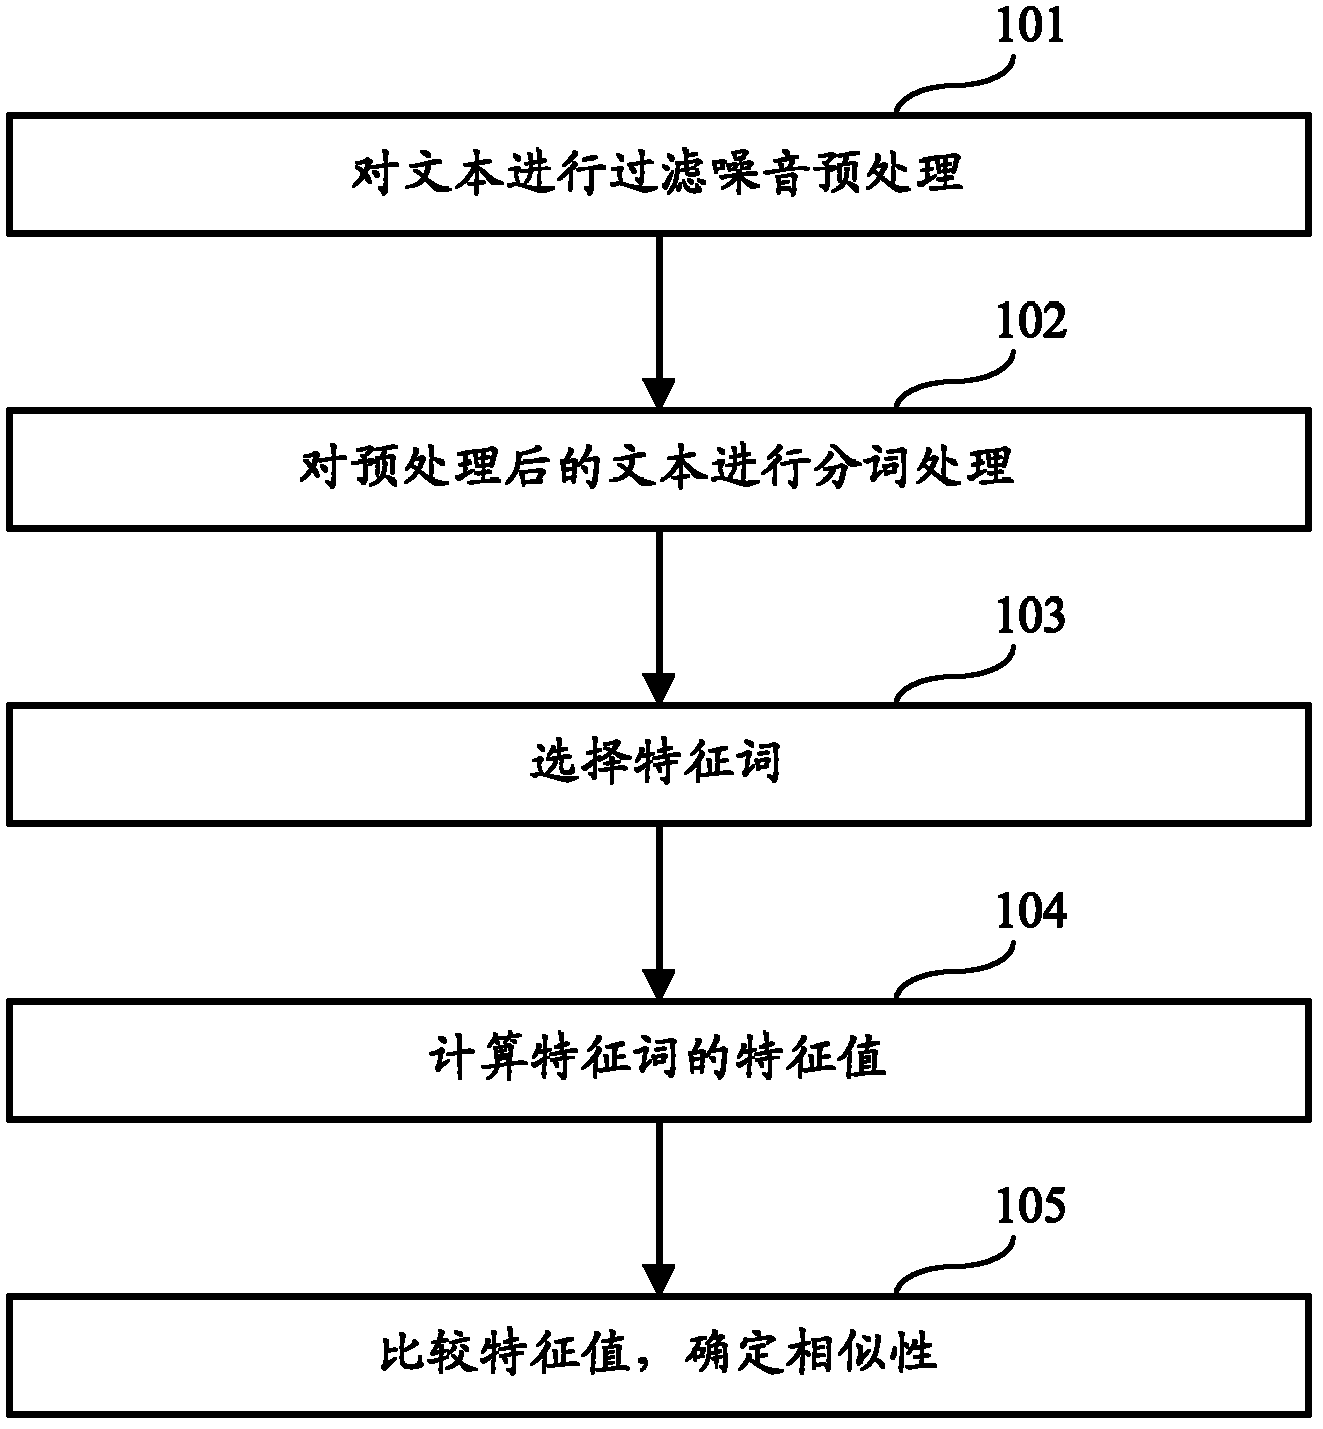 Chinese word segmentation based text similarity identifying method and device